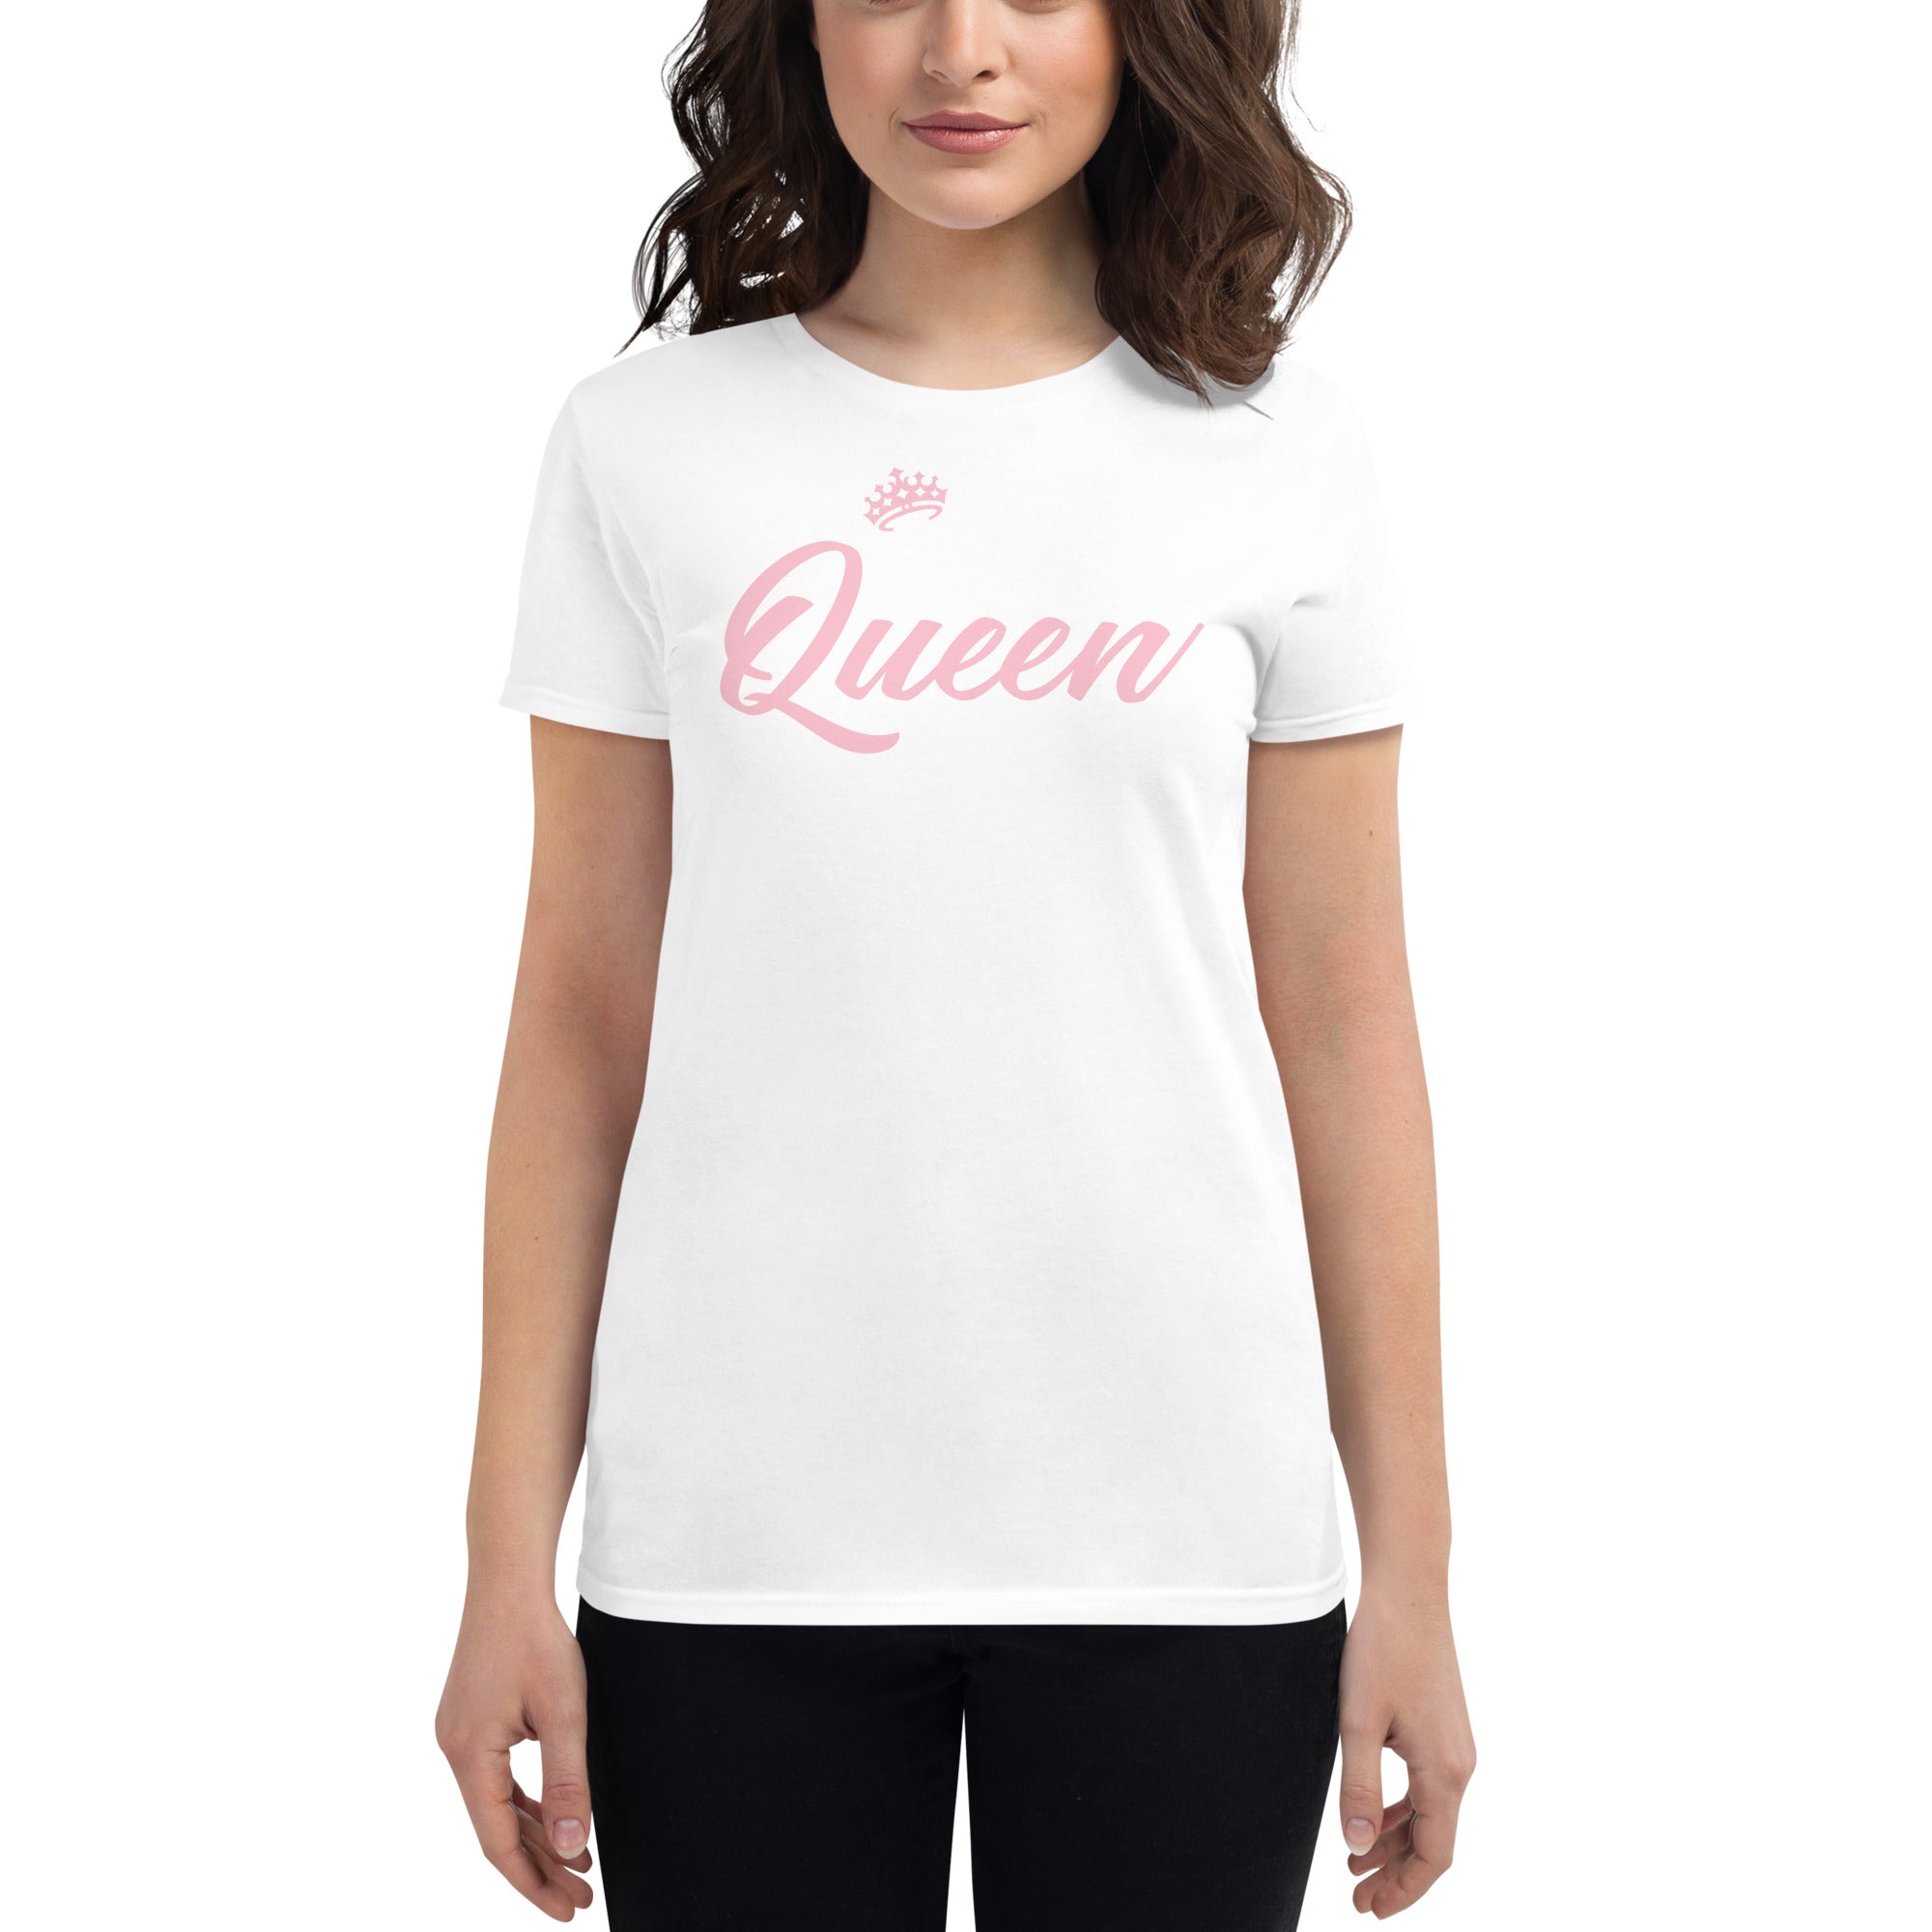 Jab Queen Women's short sleeve t-shirt